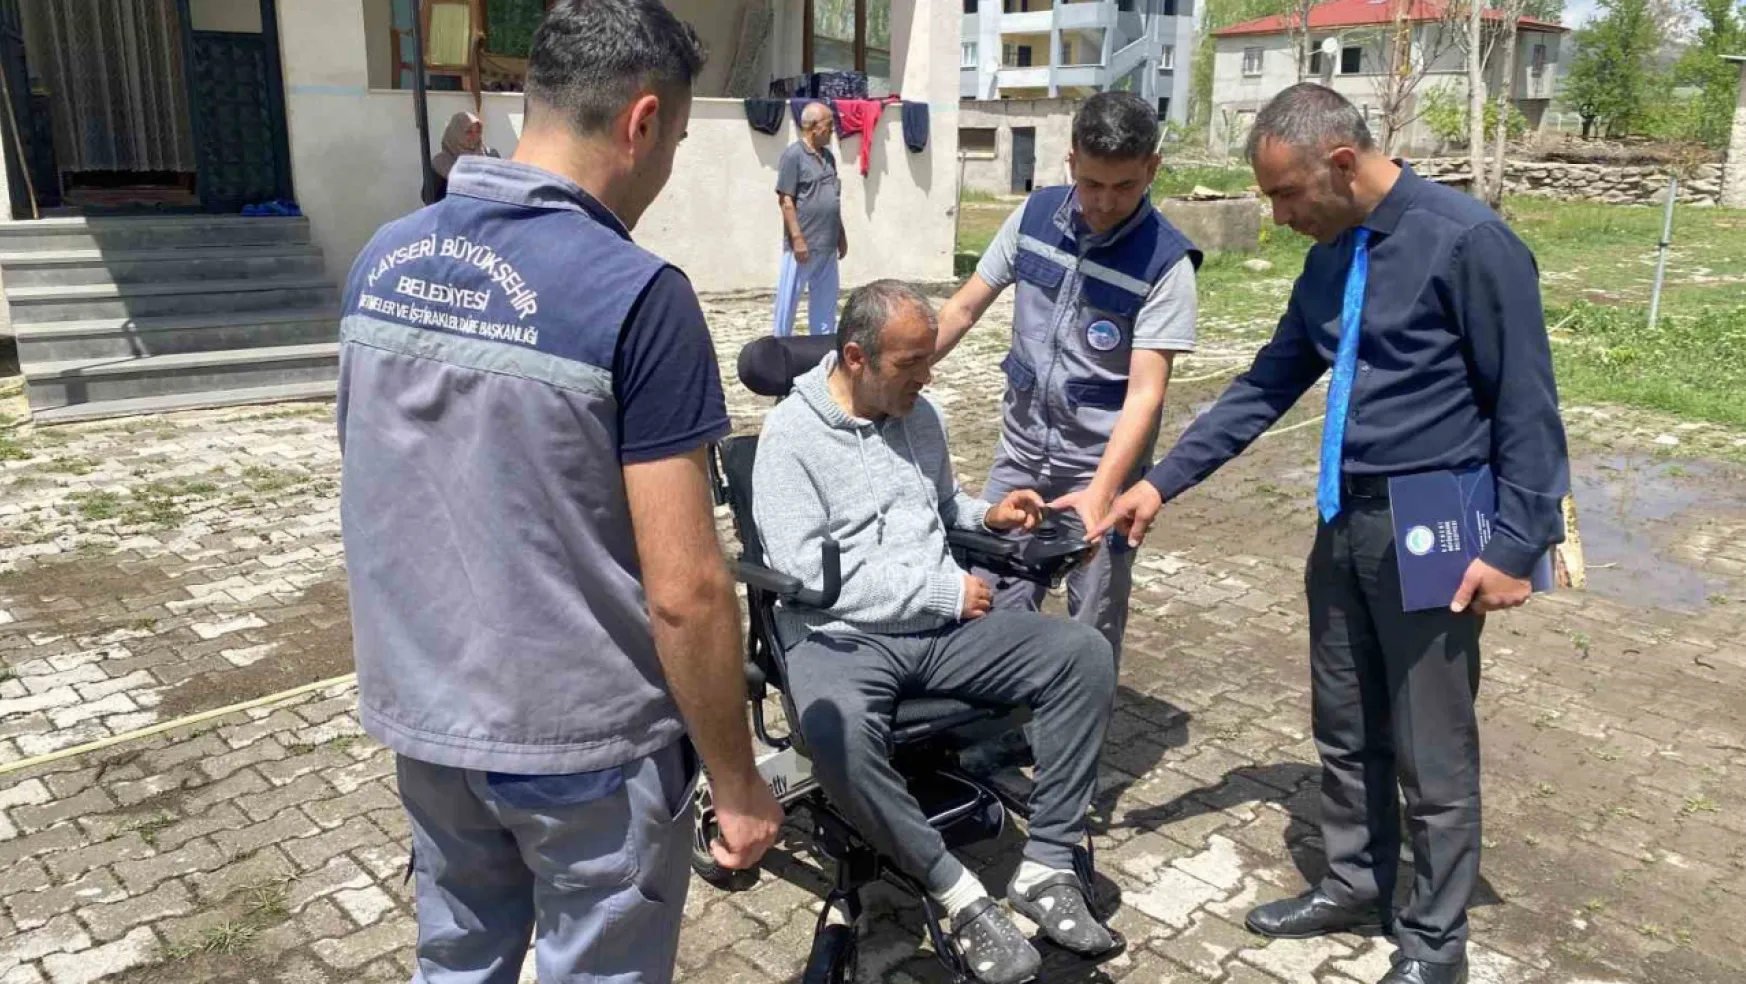 Başkan Büyükkılıç'tan akülü tekerlekli sandalye istedi, anında talebi karşılandı